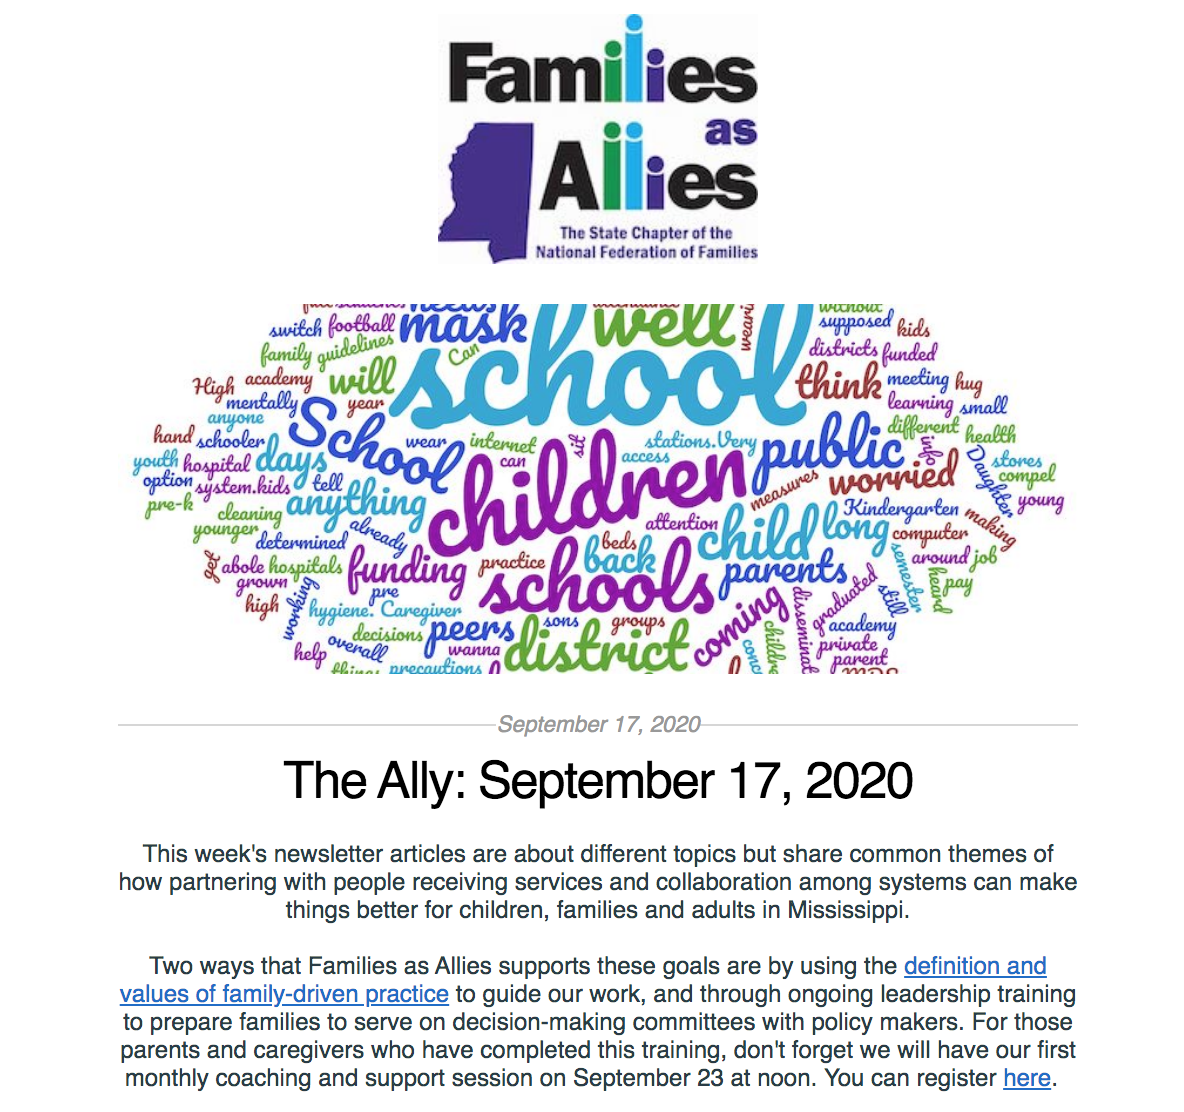 The Ally: September 17, 2020